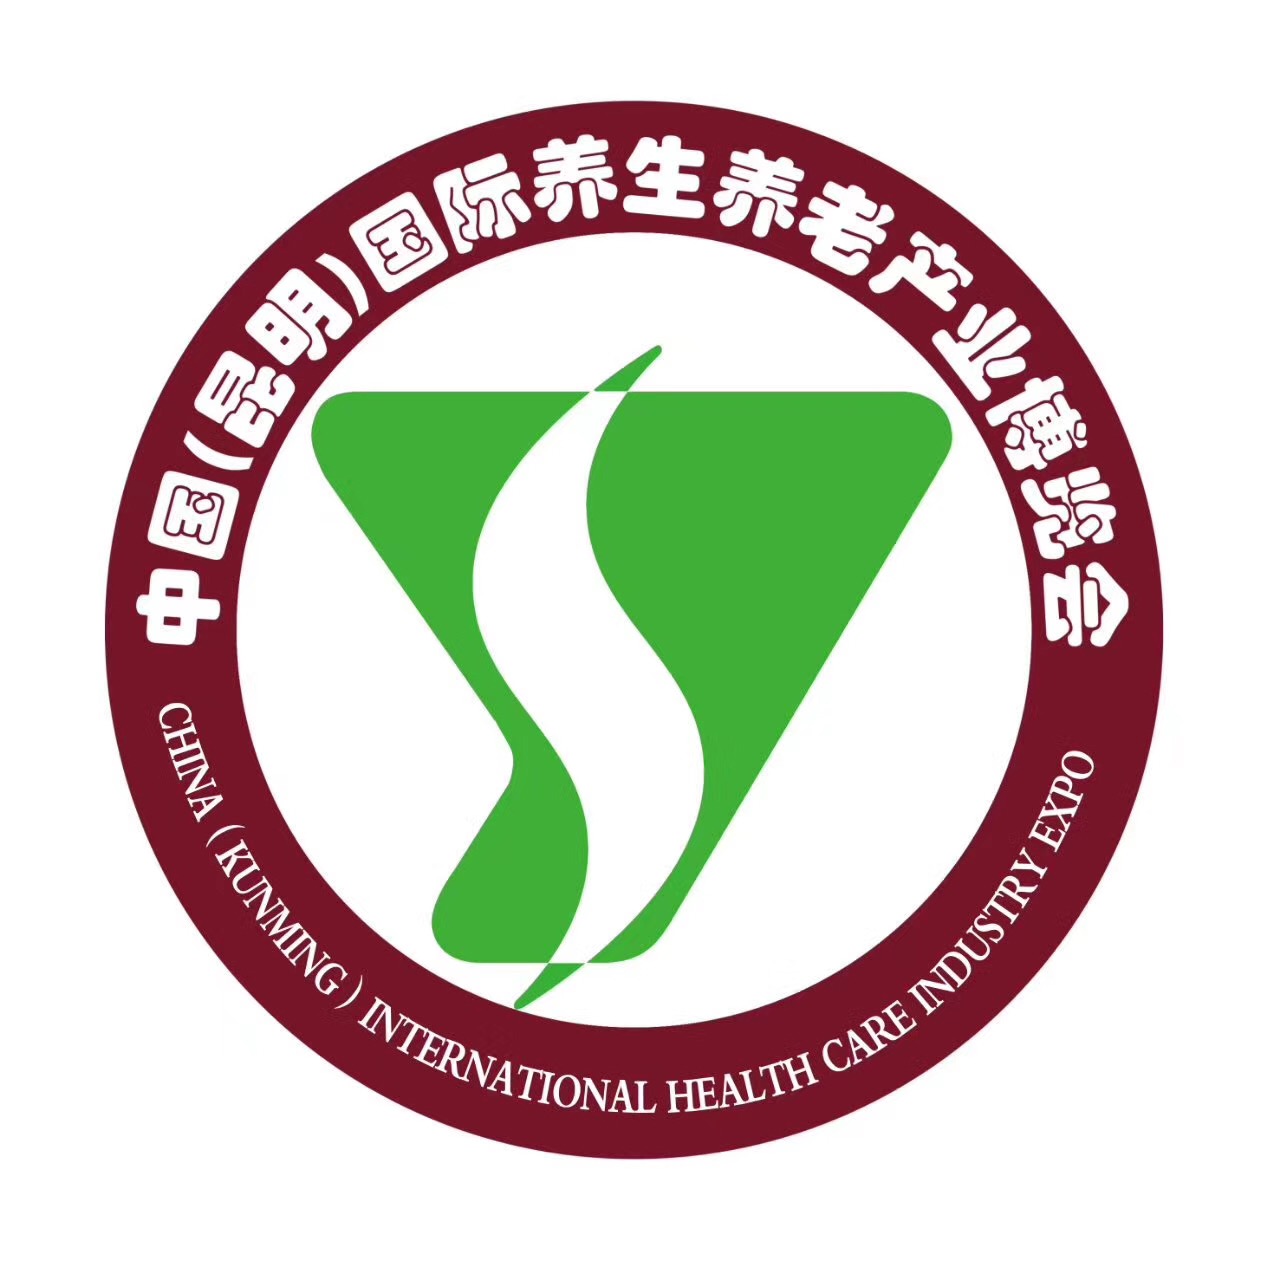 2018中国昆明国际养生养老产业博览会